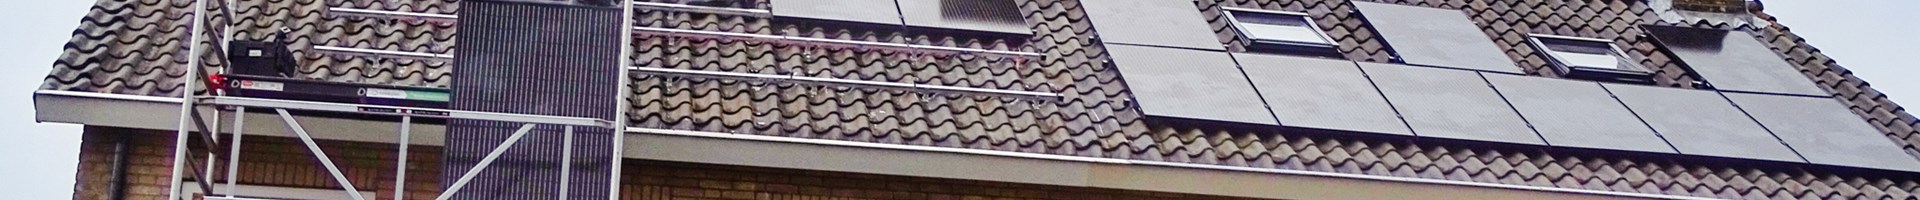 installateurs leggen zonnepanelen op het dak van een woning